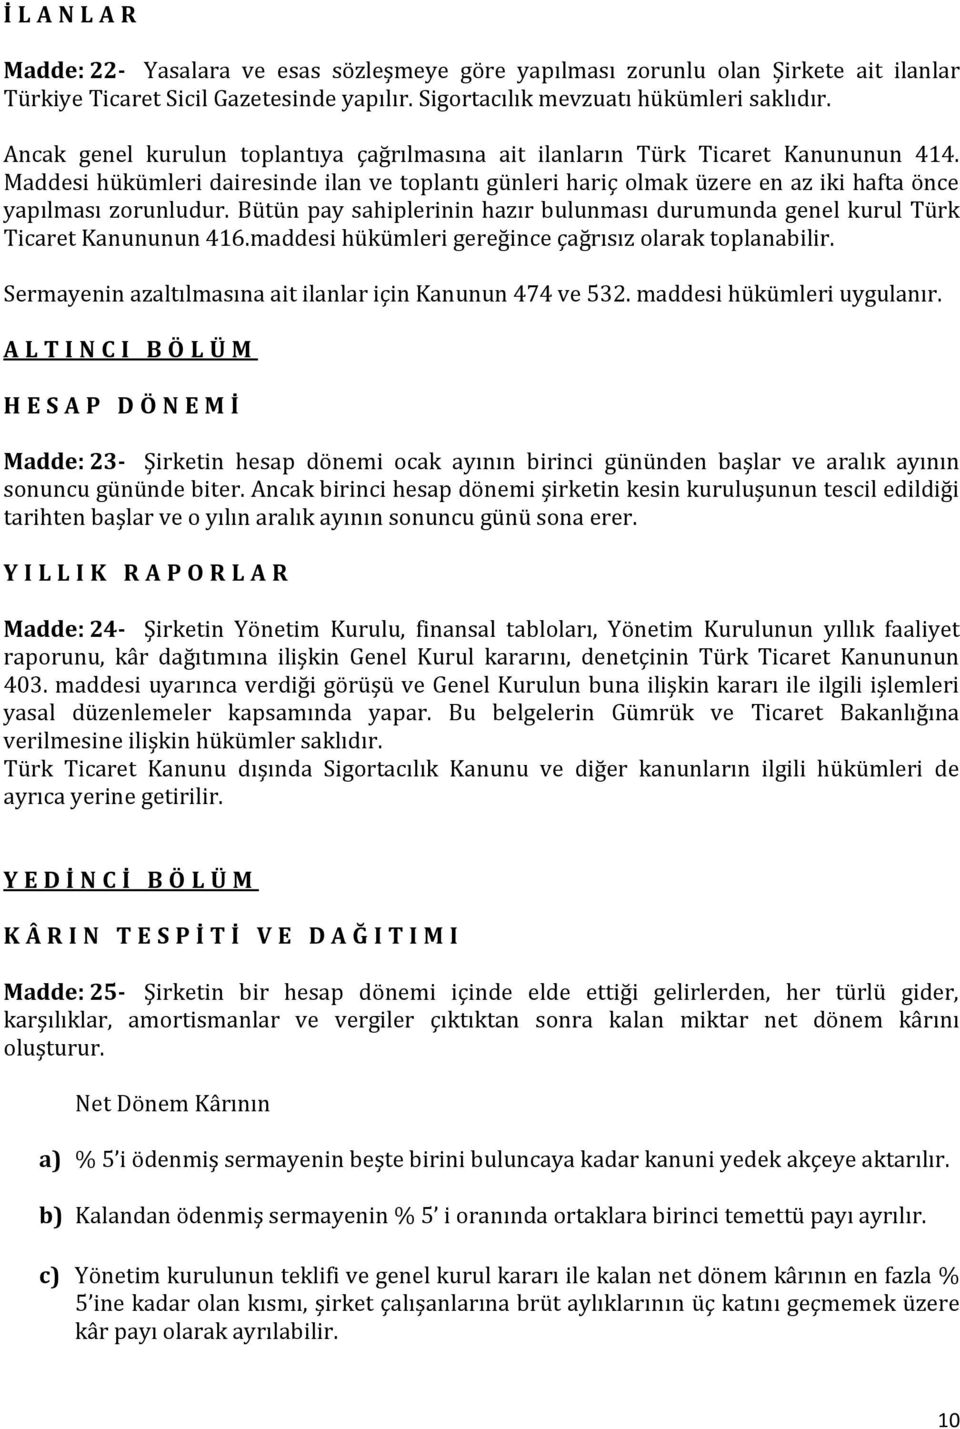 Bütün pay sahiplerinin hazır bulunması durumunda genel kurul Türk Ticaret Kanununun 416.maddesi hükümleri gereğince çağrısız olarak toplanabilir.